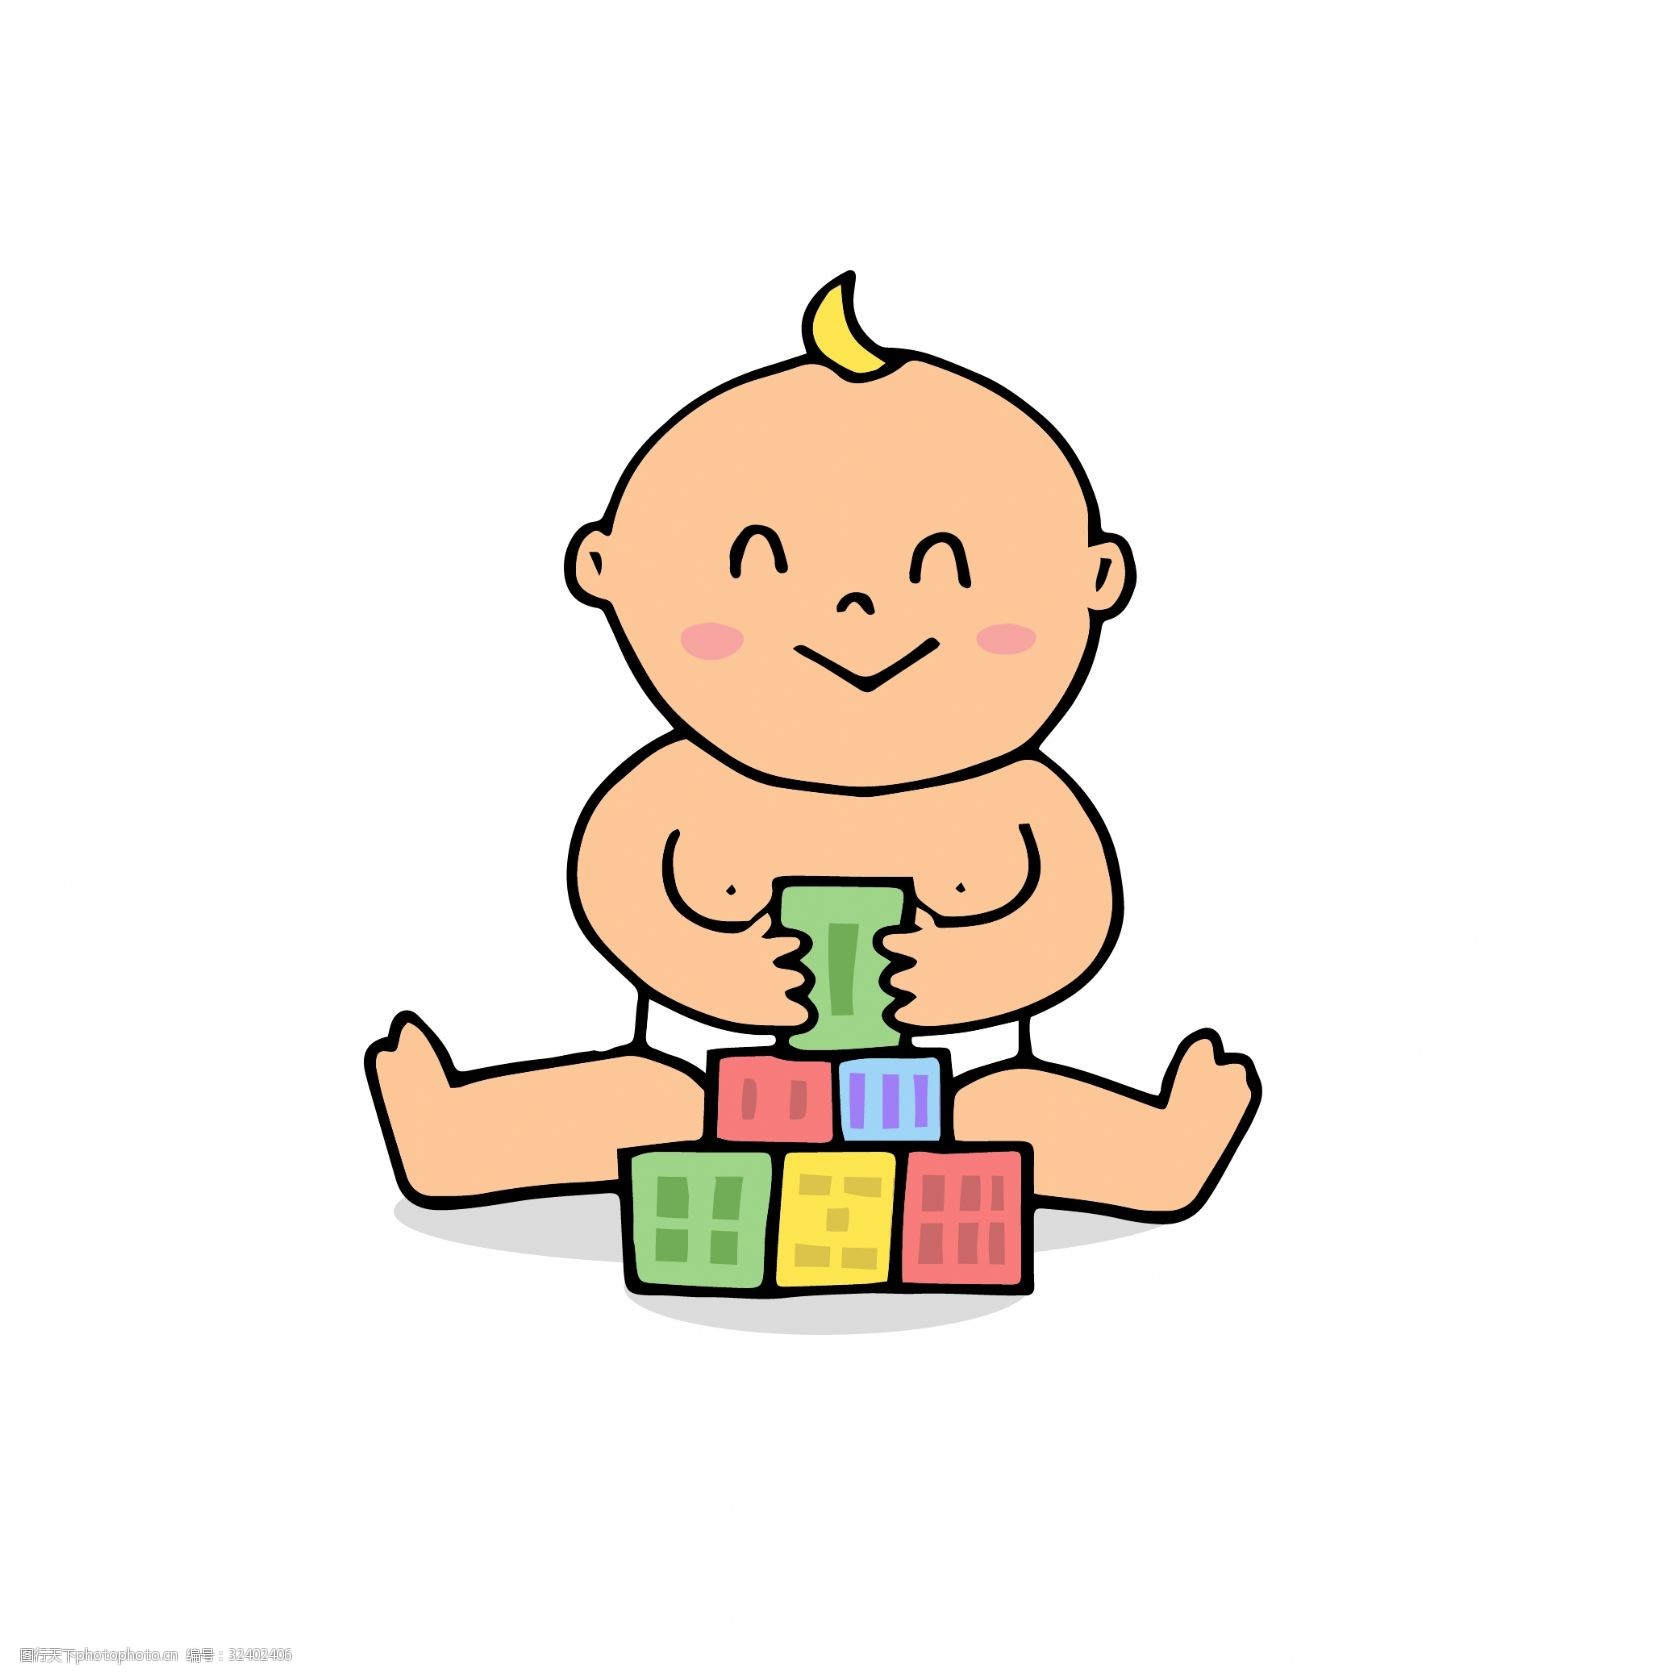 关键词:开心搭积木的宝宝矢量素材 宝宝 可爱宝宝 开心 卡通宝宝 宝宝